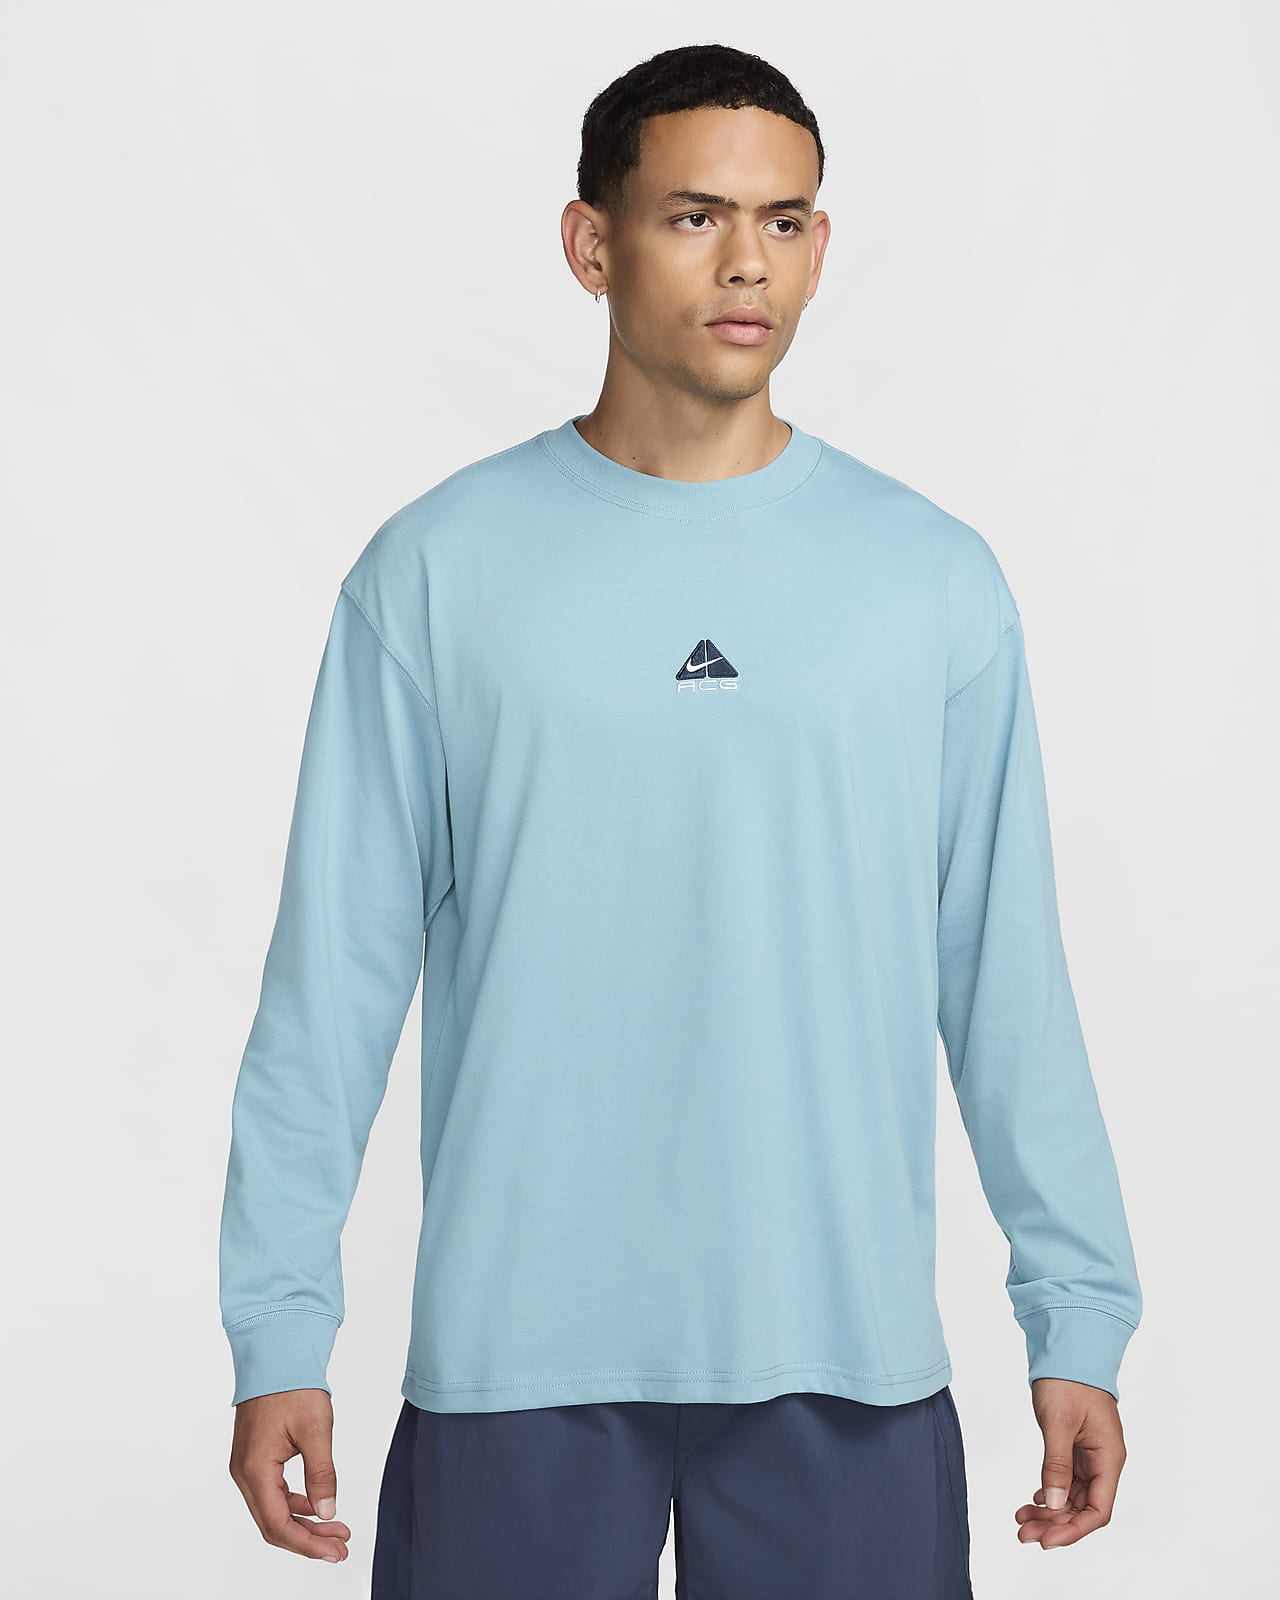 Nike ACG "Lungs" Men's Long-Sleeve T-Shirt